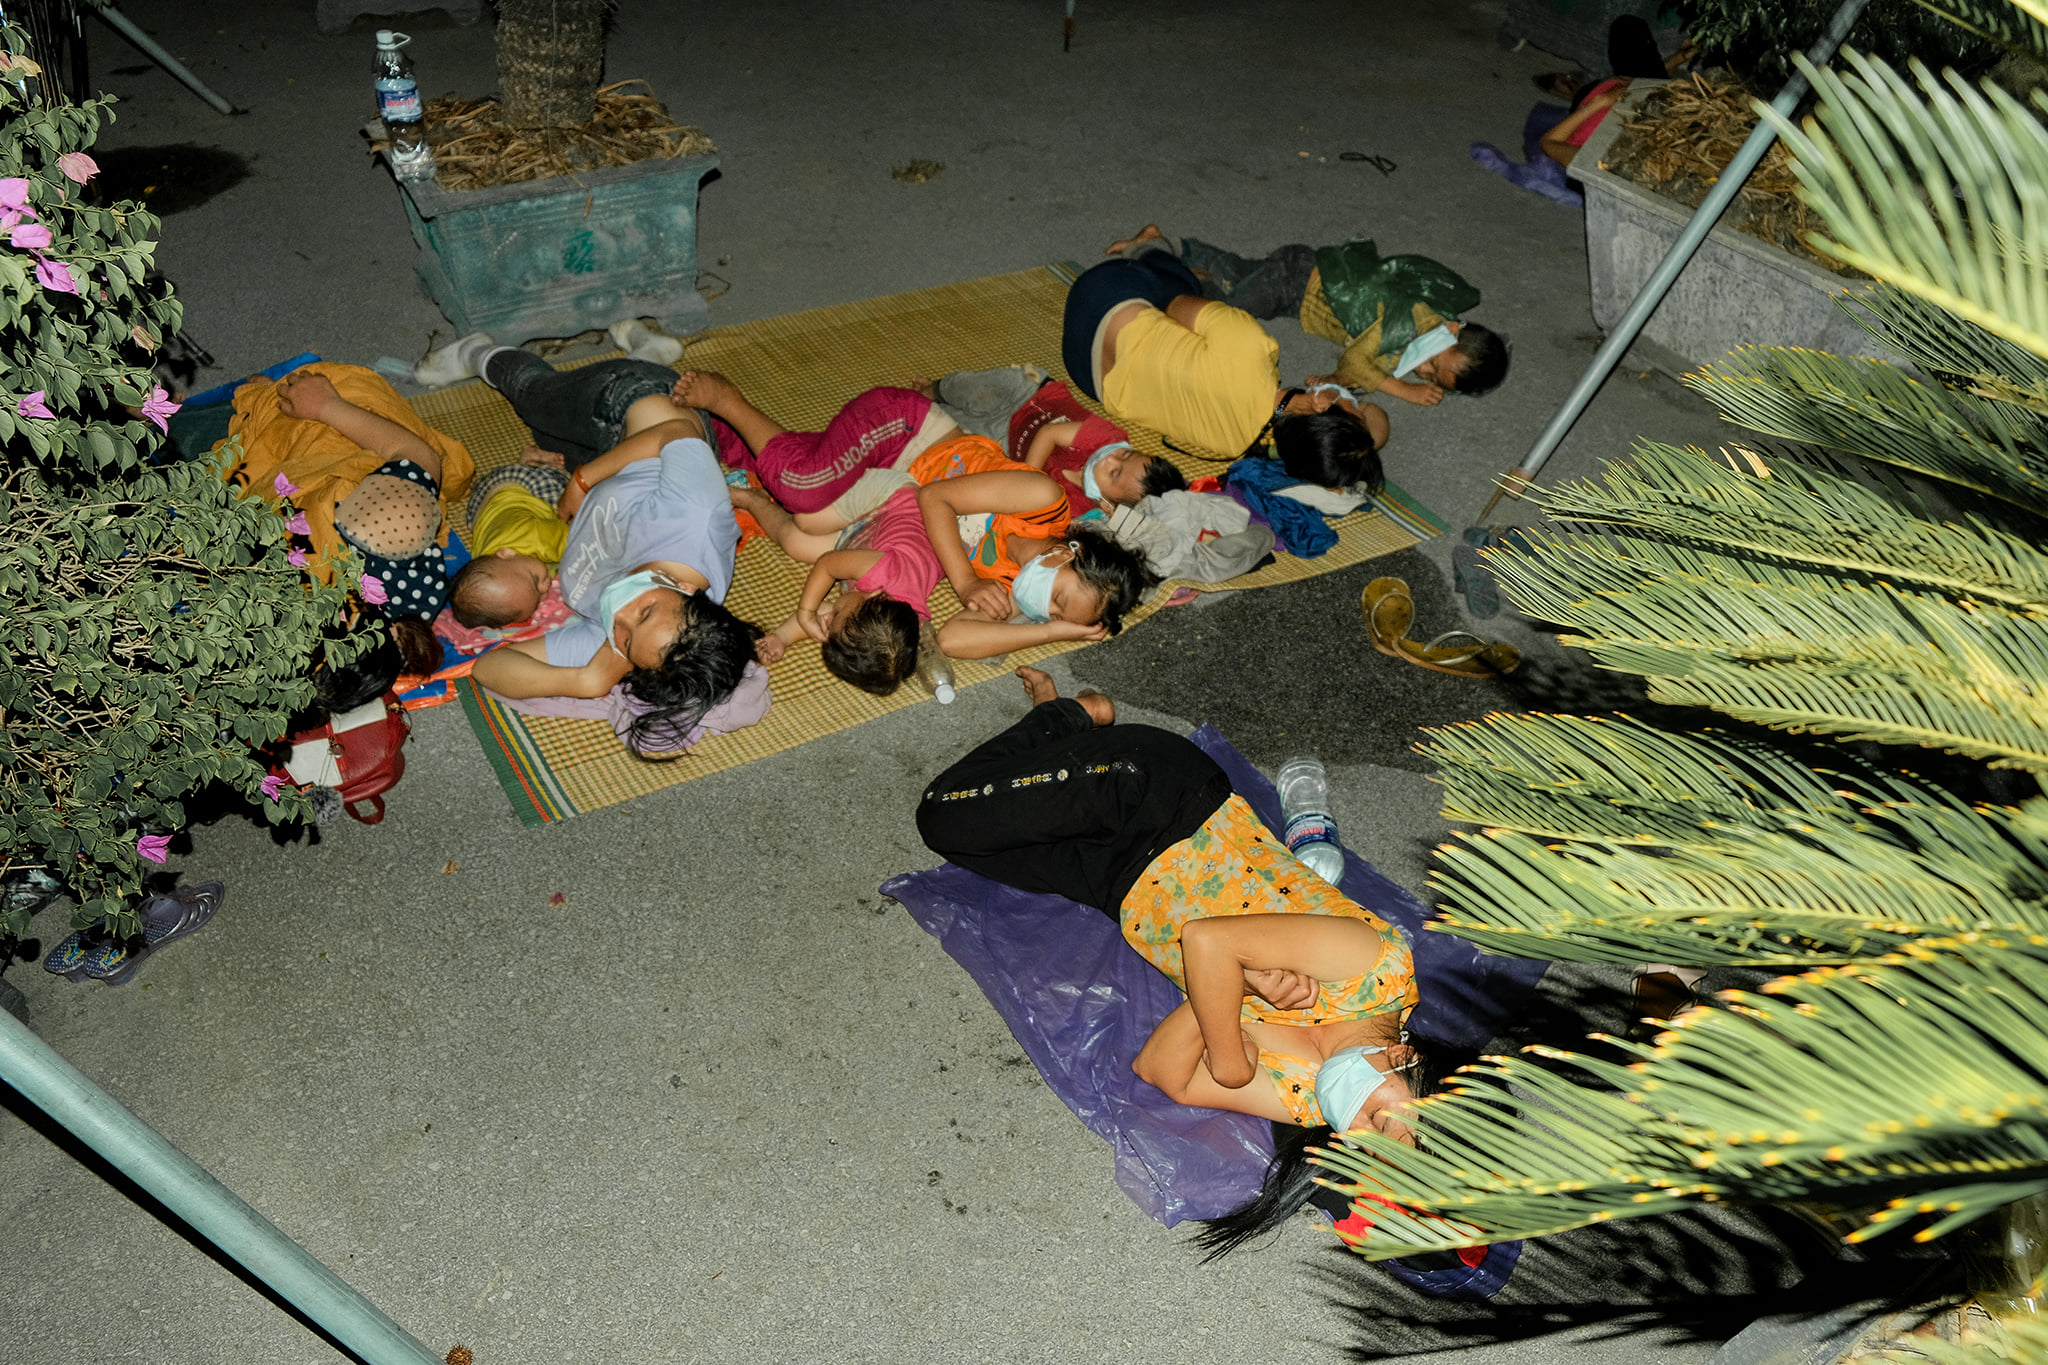 Đoàn người về quê ngủ lại bên góc đường tại chốt Bến Thủy, Nghệ An đêm 31/7 (ảnh facebook: Doãn Thiên Tú).